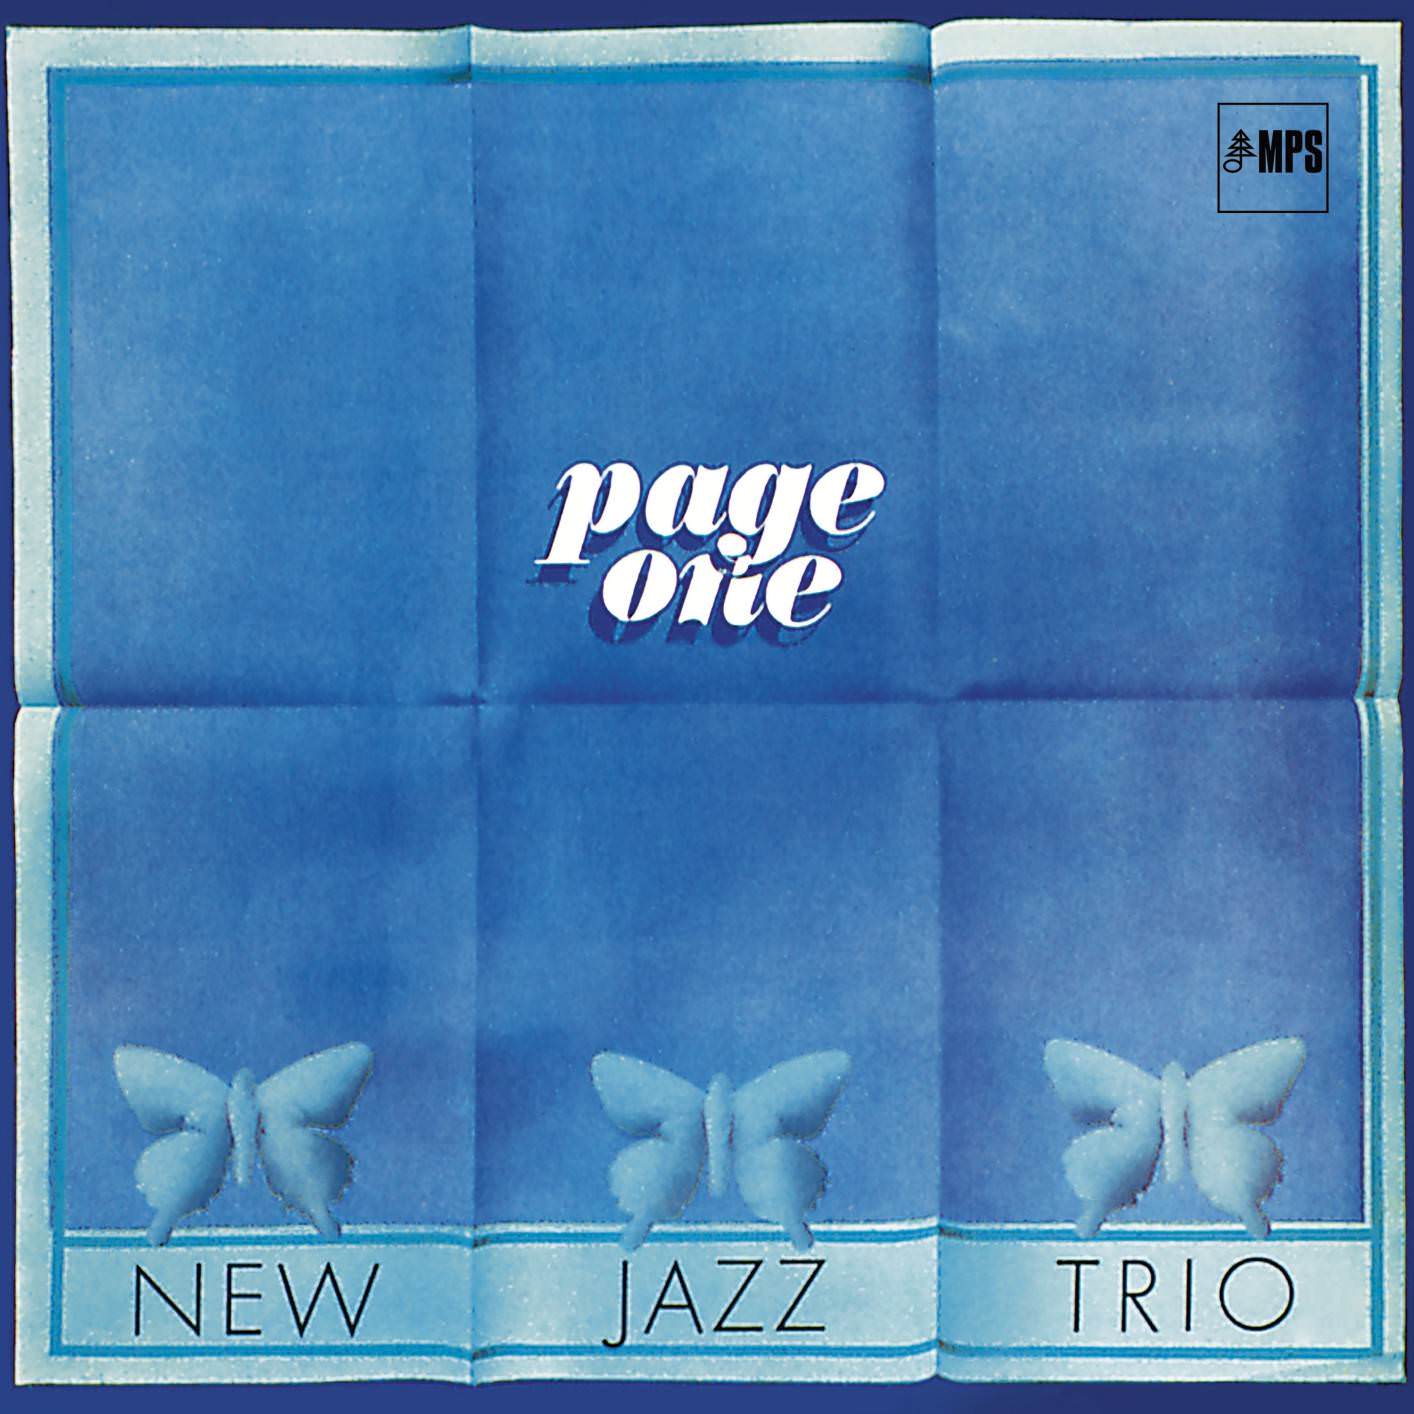 New Jazz Trio - Page One (1970/2017) [HighResAudio FLAC 24bit/88,2kHz]